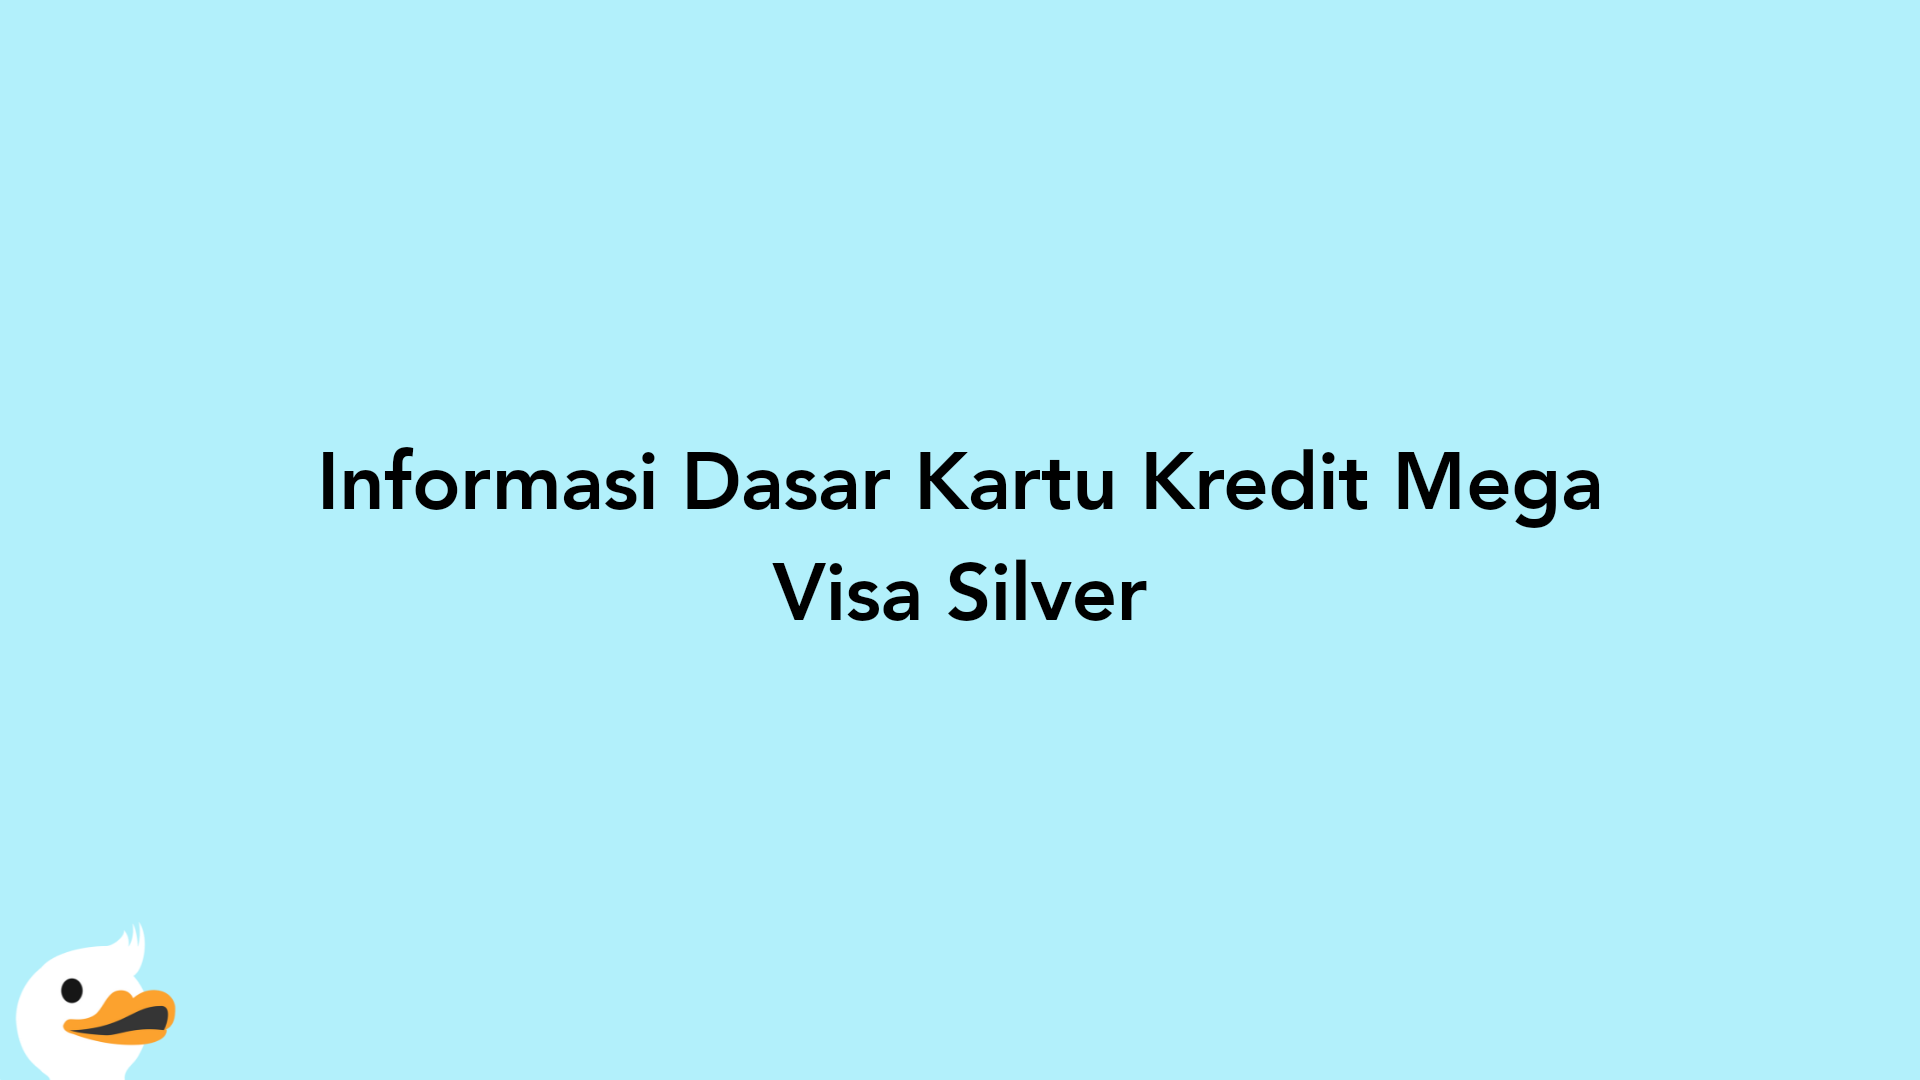 Informasi Dasar Kartu Kredit Mega Visa Silver